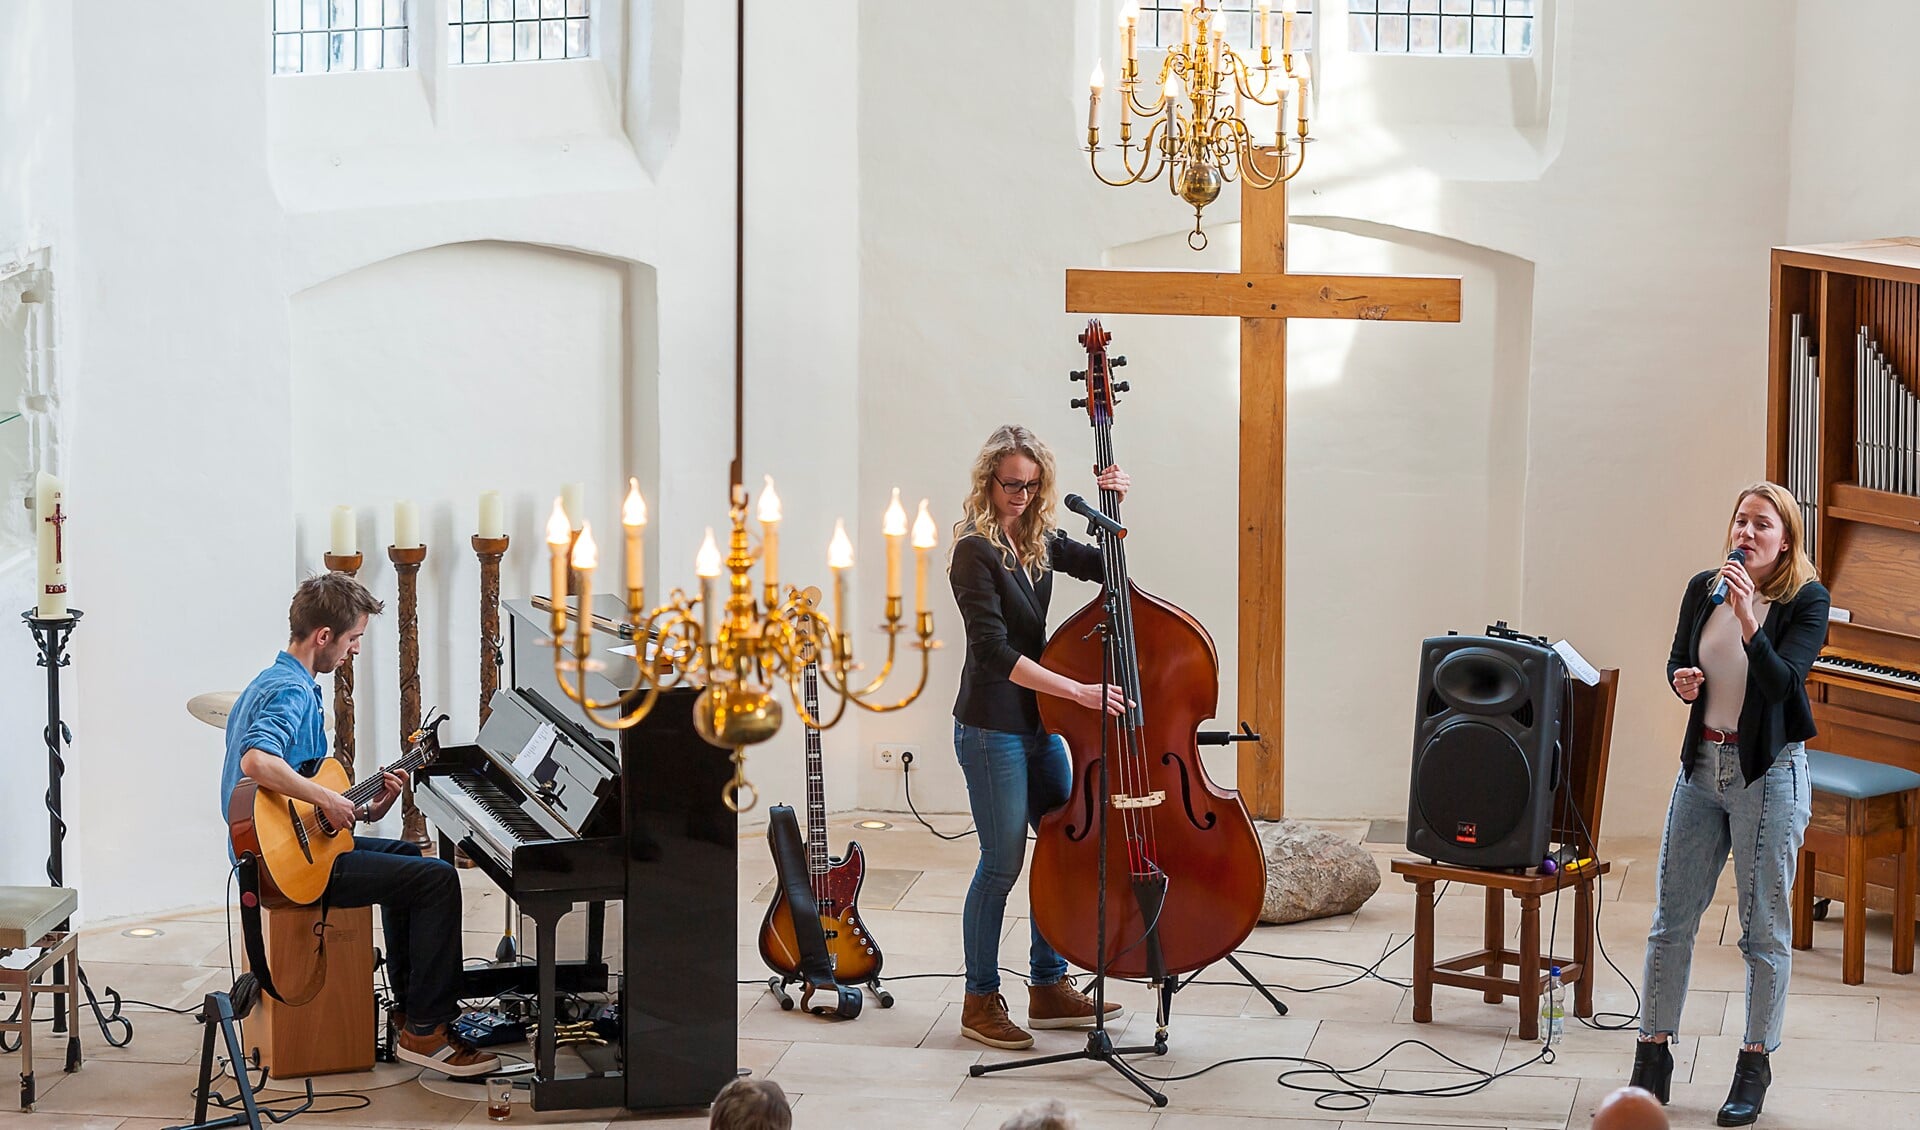 Green Valentine speelt akoestisch in de Silvoldse kerk. Foto: Henk van Raaij